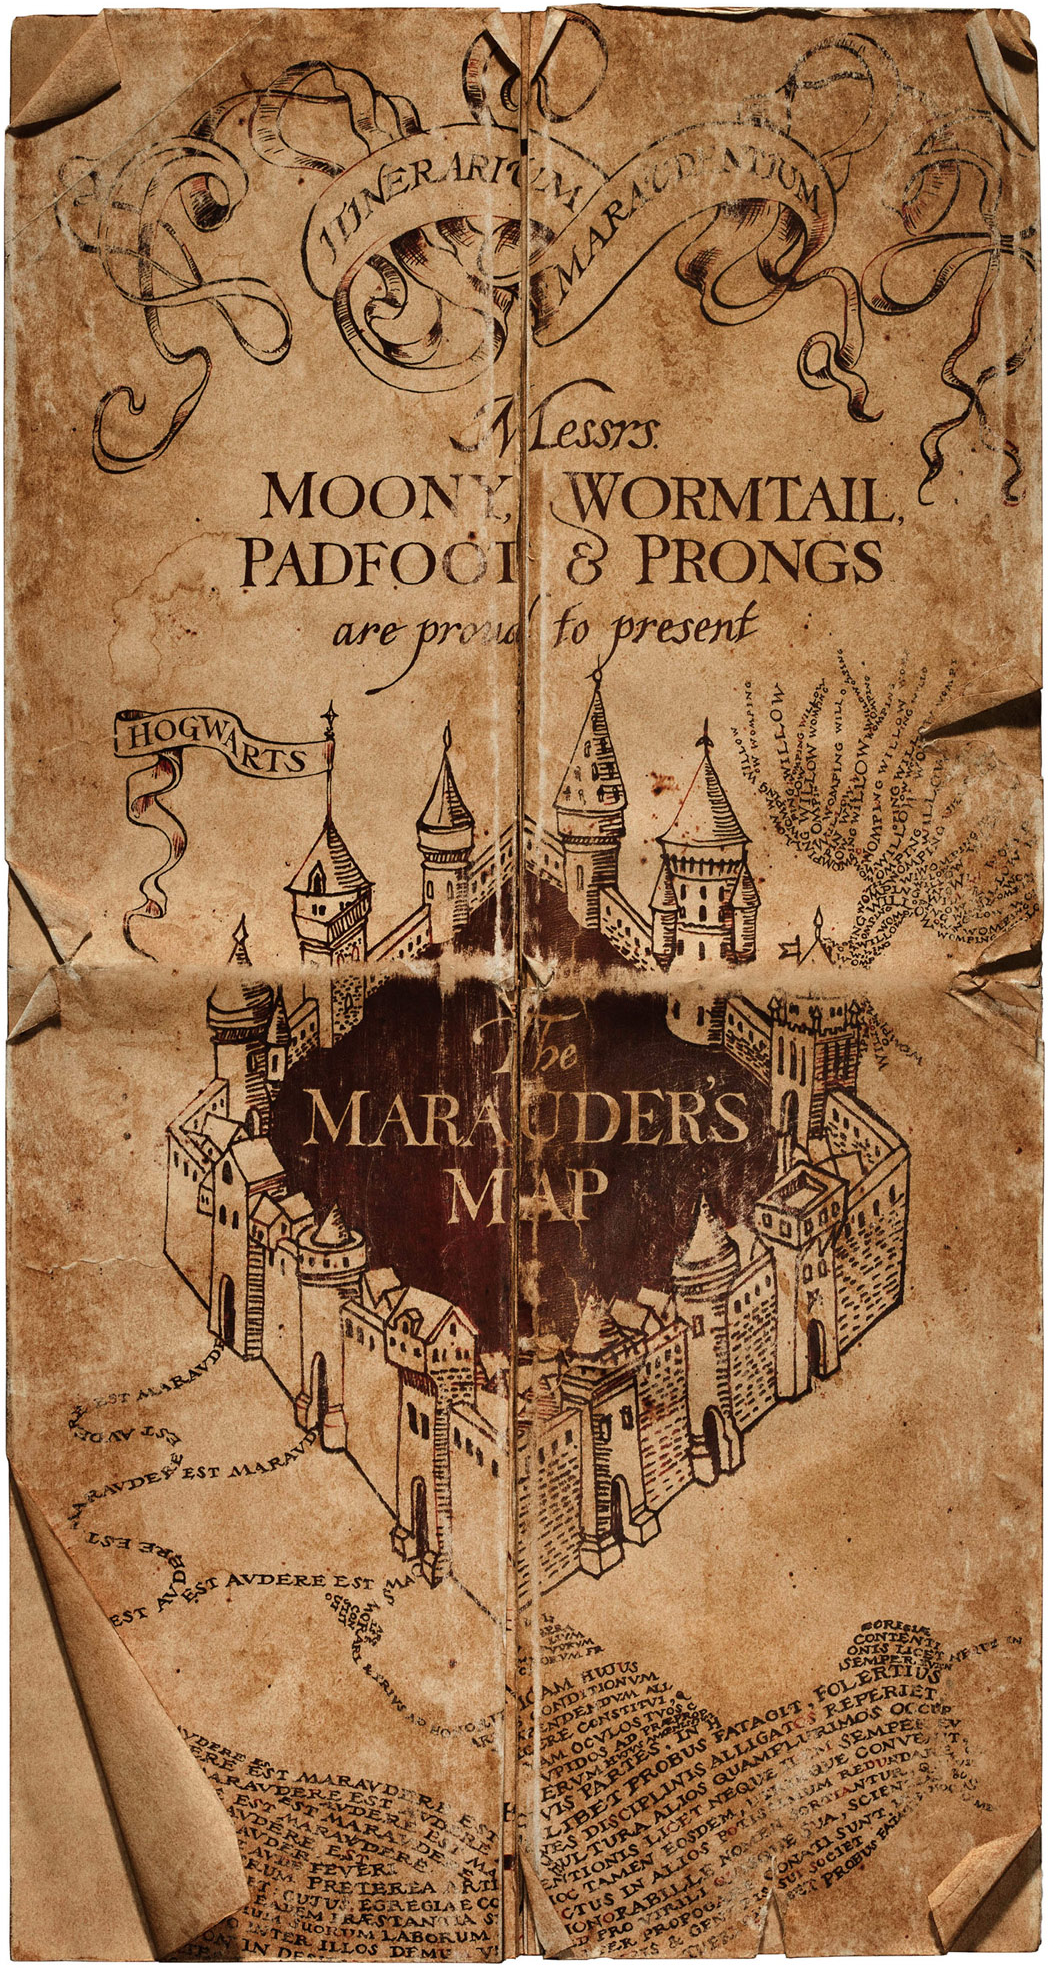 Navigate Hogwart's passages with the Marauder's Map - woodgeekstore